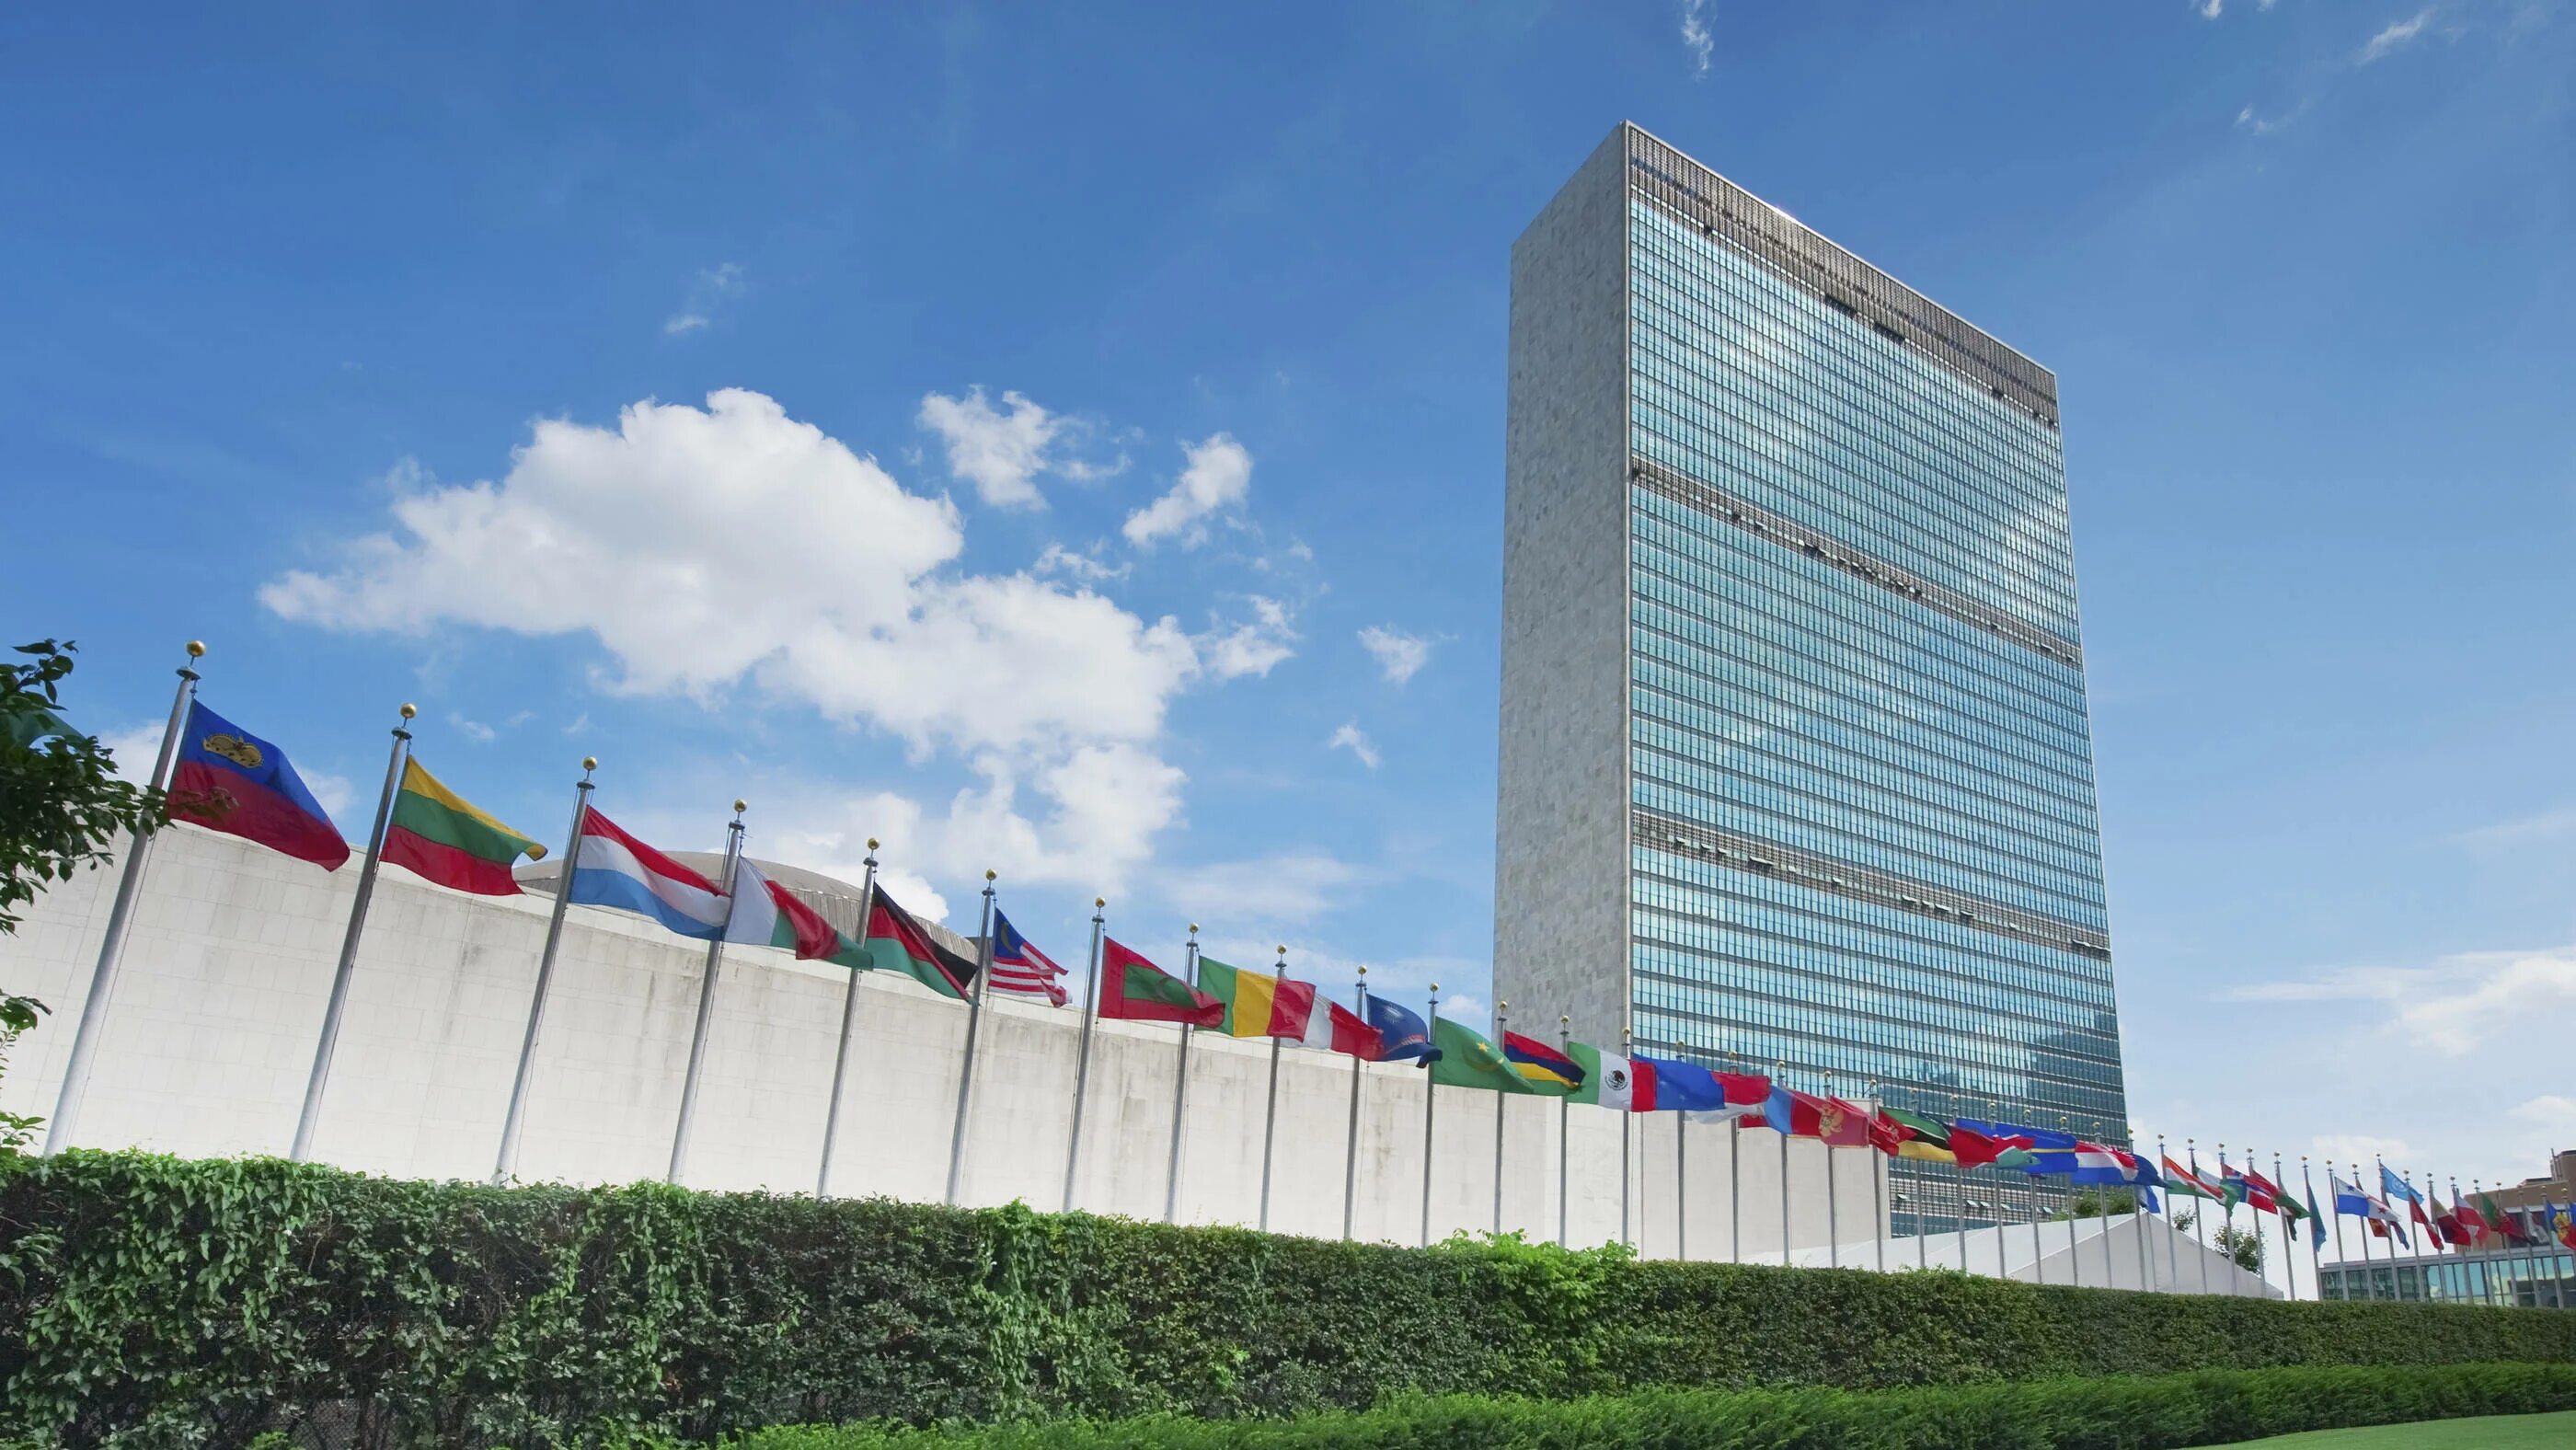 Город штаб оон. Штаб-квартира ООН В Нью-Йорке. Здание Объединенных наций Нью-Йорк. Комплекс зданий ООН В Нью-Йорке. Здание Генеральной Ассамблеи ООН В Нью-Йорке.